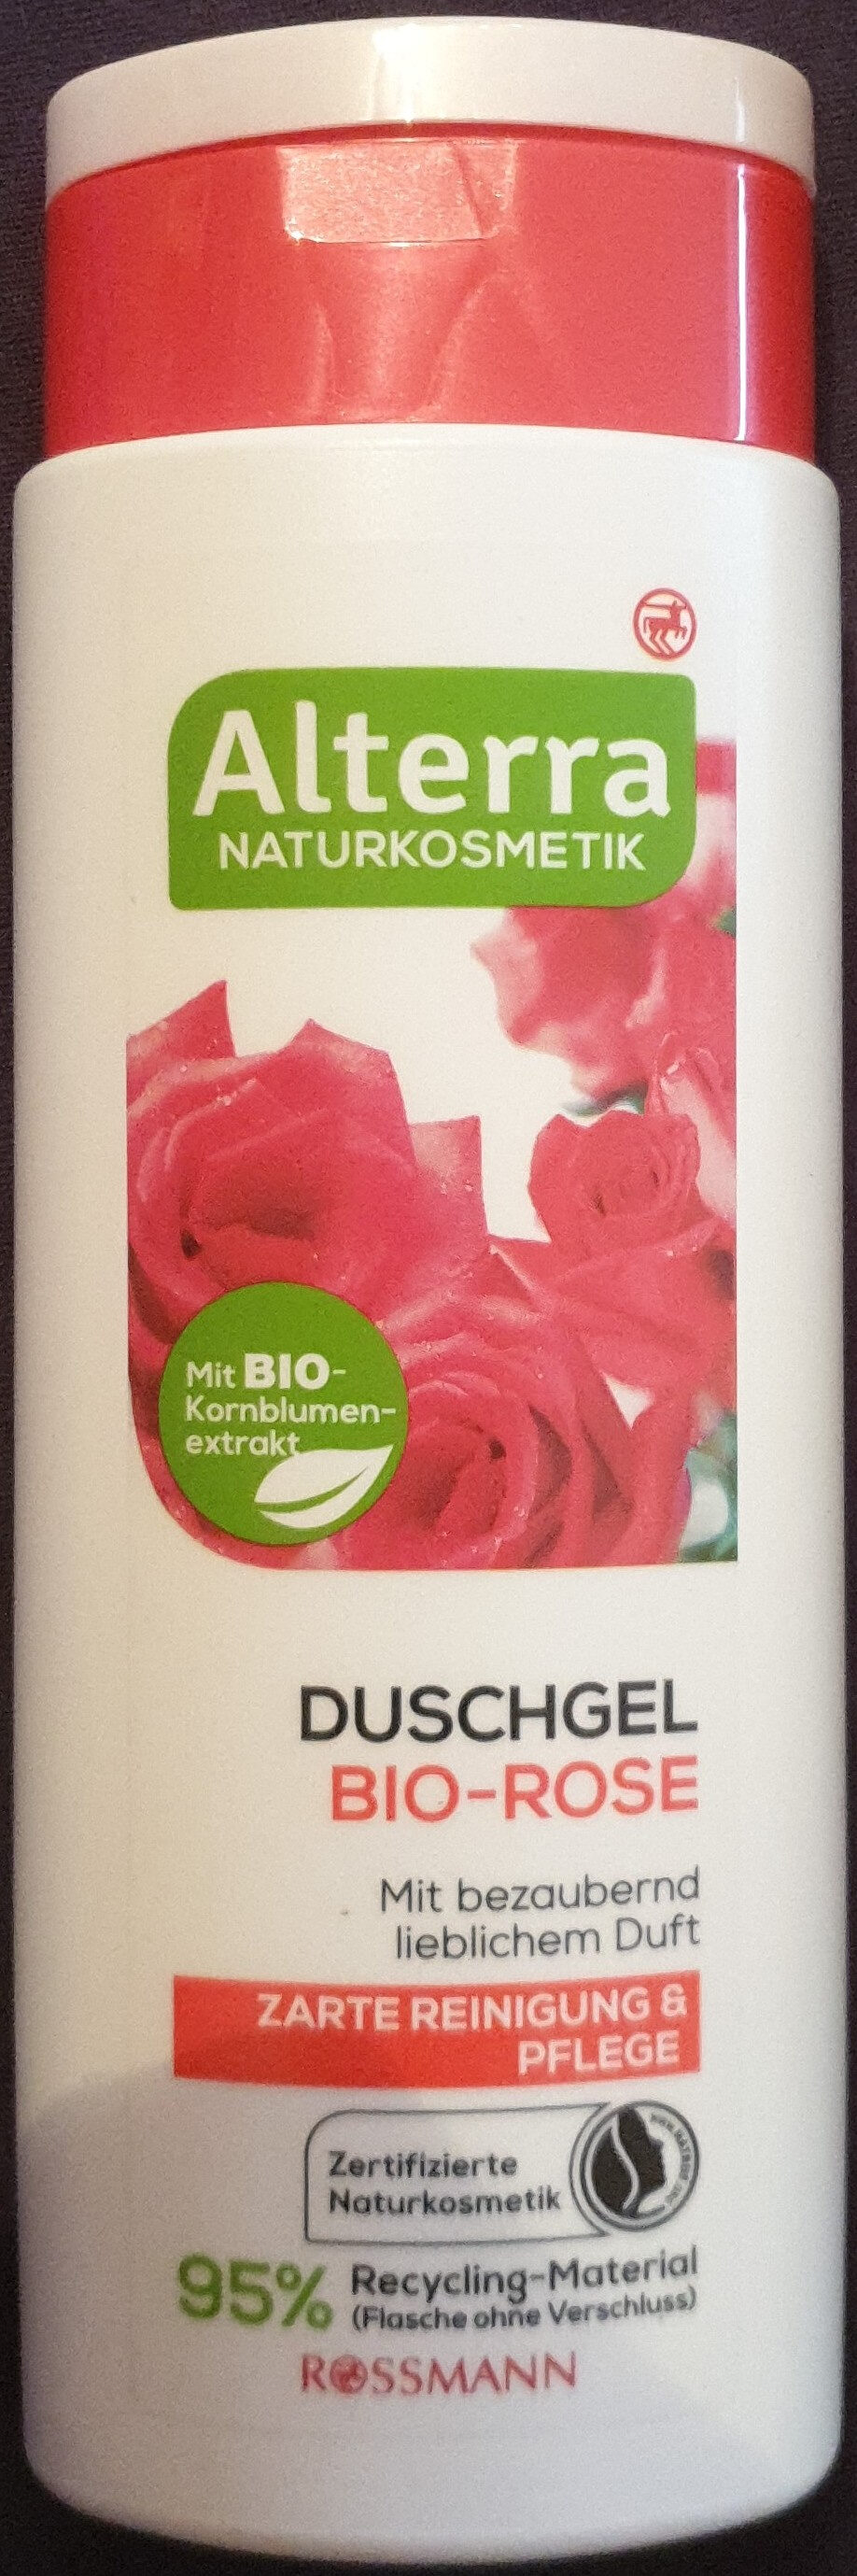 Duschgel Bio-Rose - Produit - de